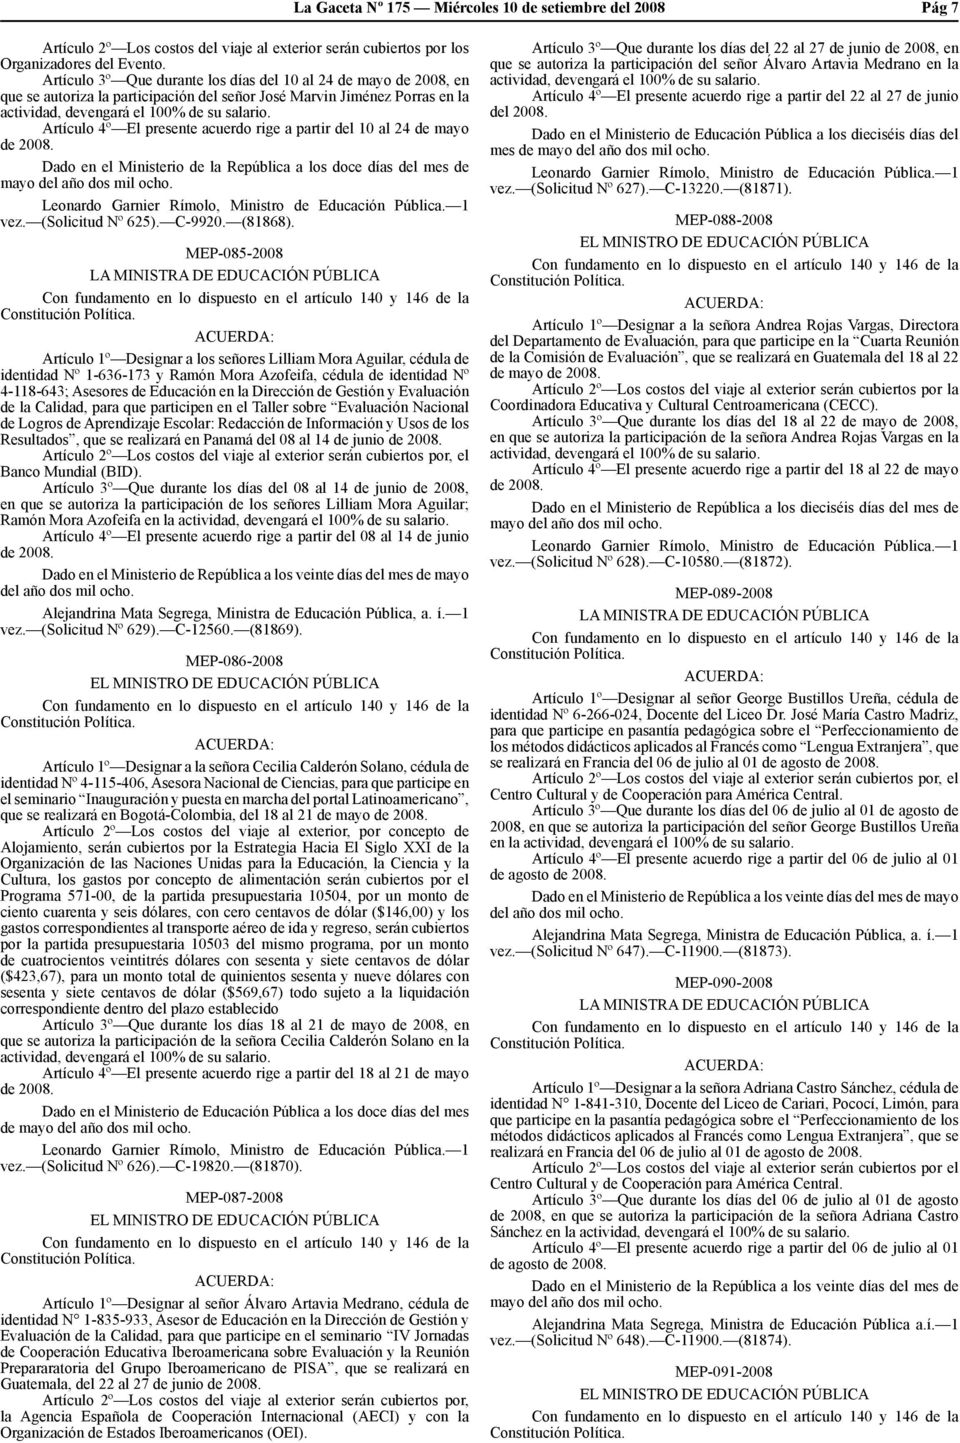 Artículo 4º El presente acuerdo rige a partir del 10 al 24 de mayo de 2008. Dado en el Ministerio de la República a los doce días del mes de mayo del año dos mil ocho.